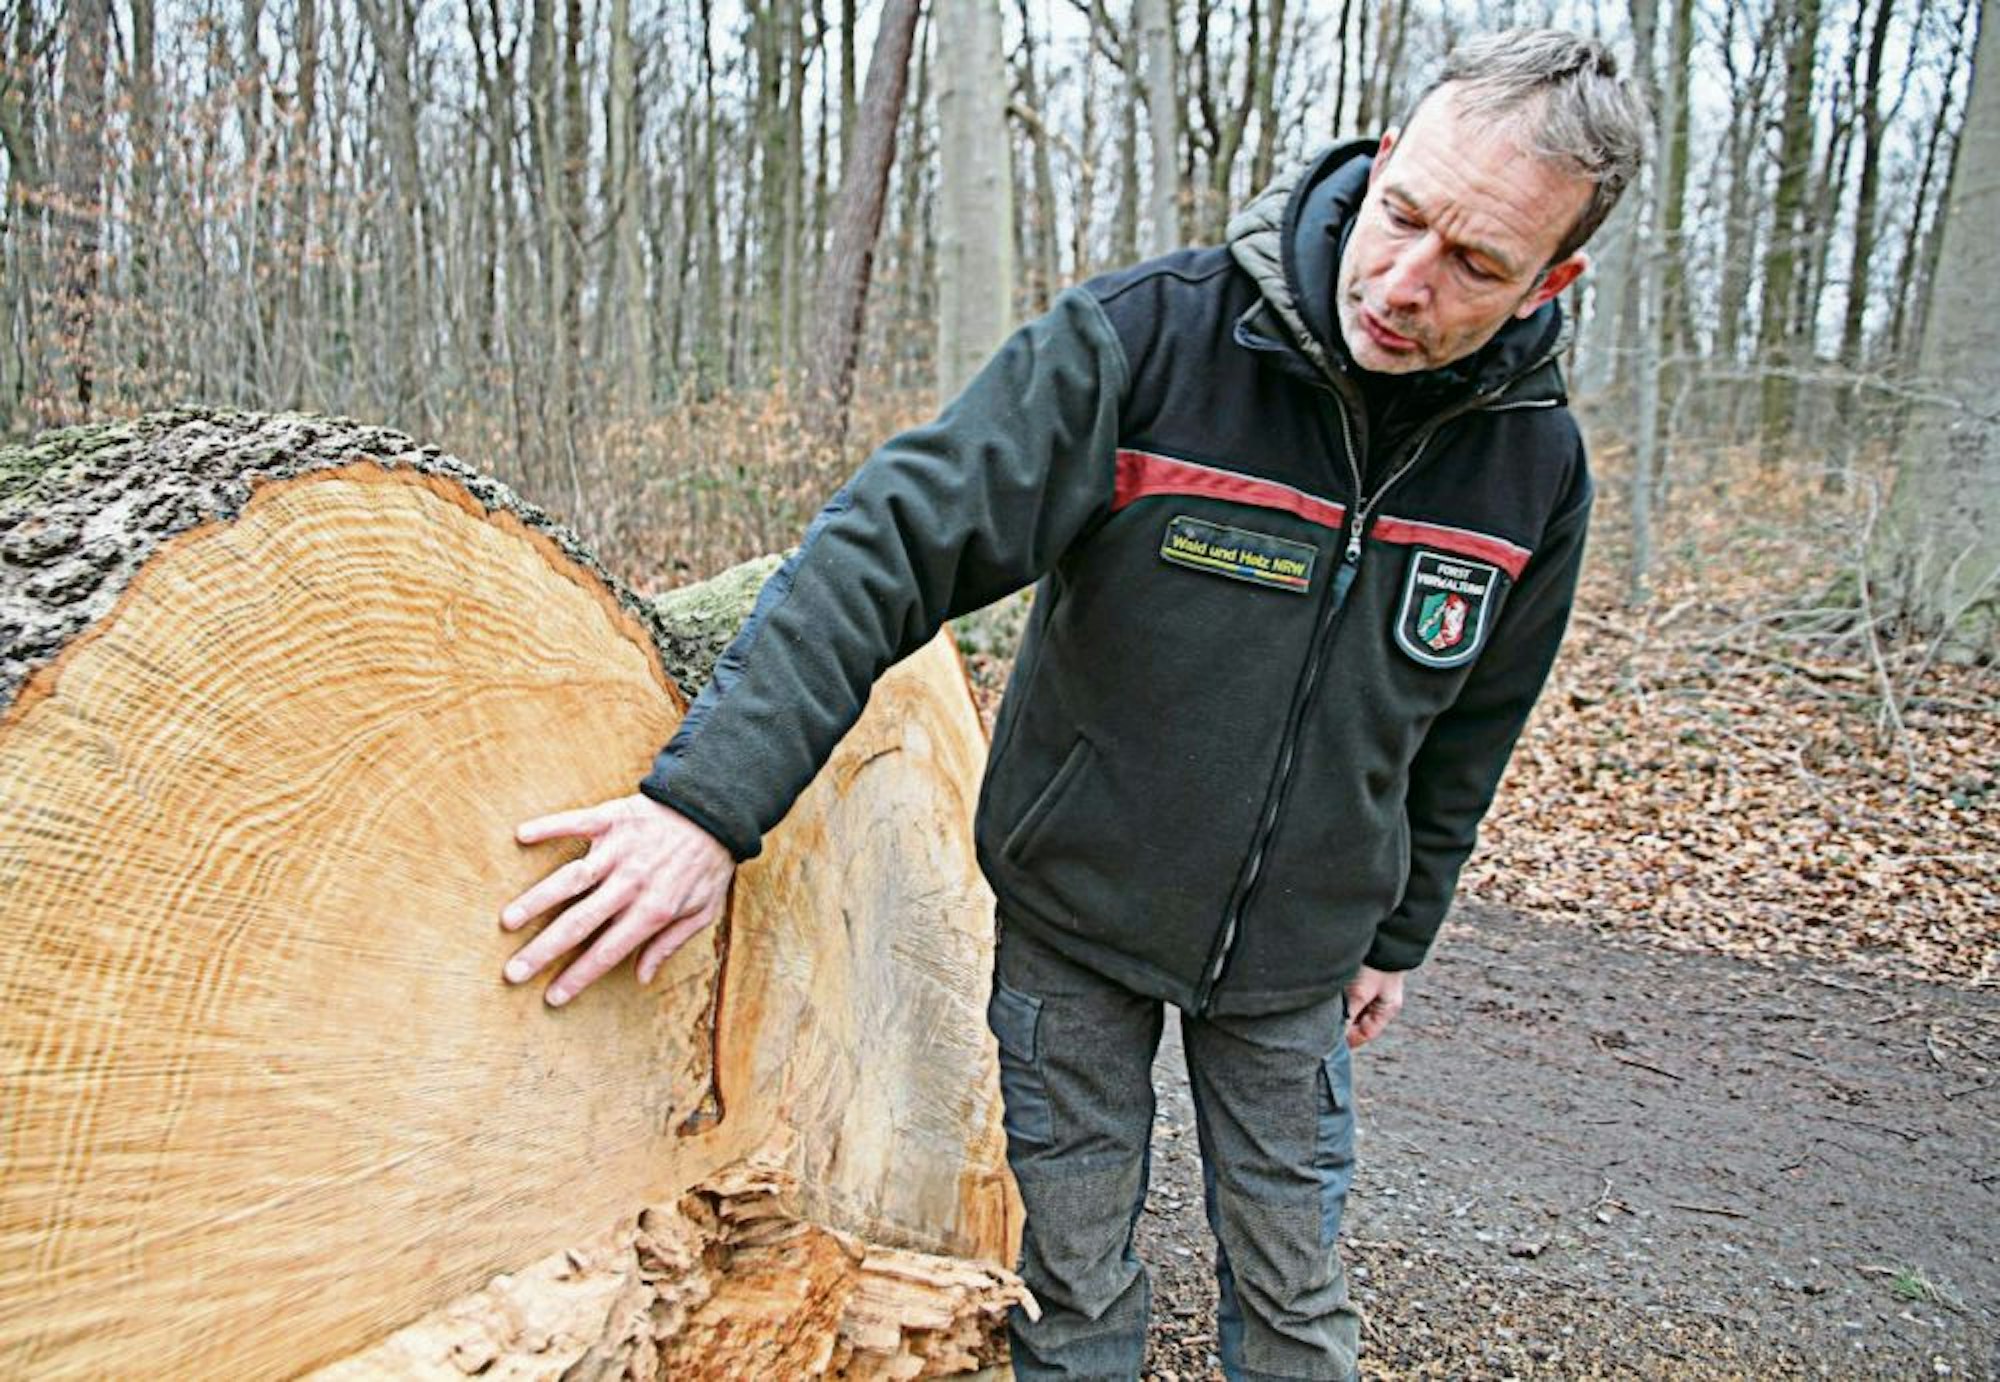 Graue Stellen im Holz sind für Förster Axel Horn ein Beleg für den schlechten Zustand des Baums.